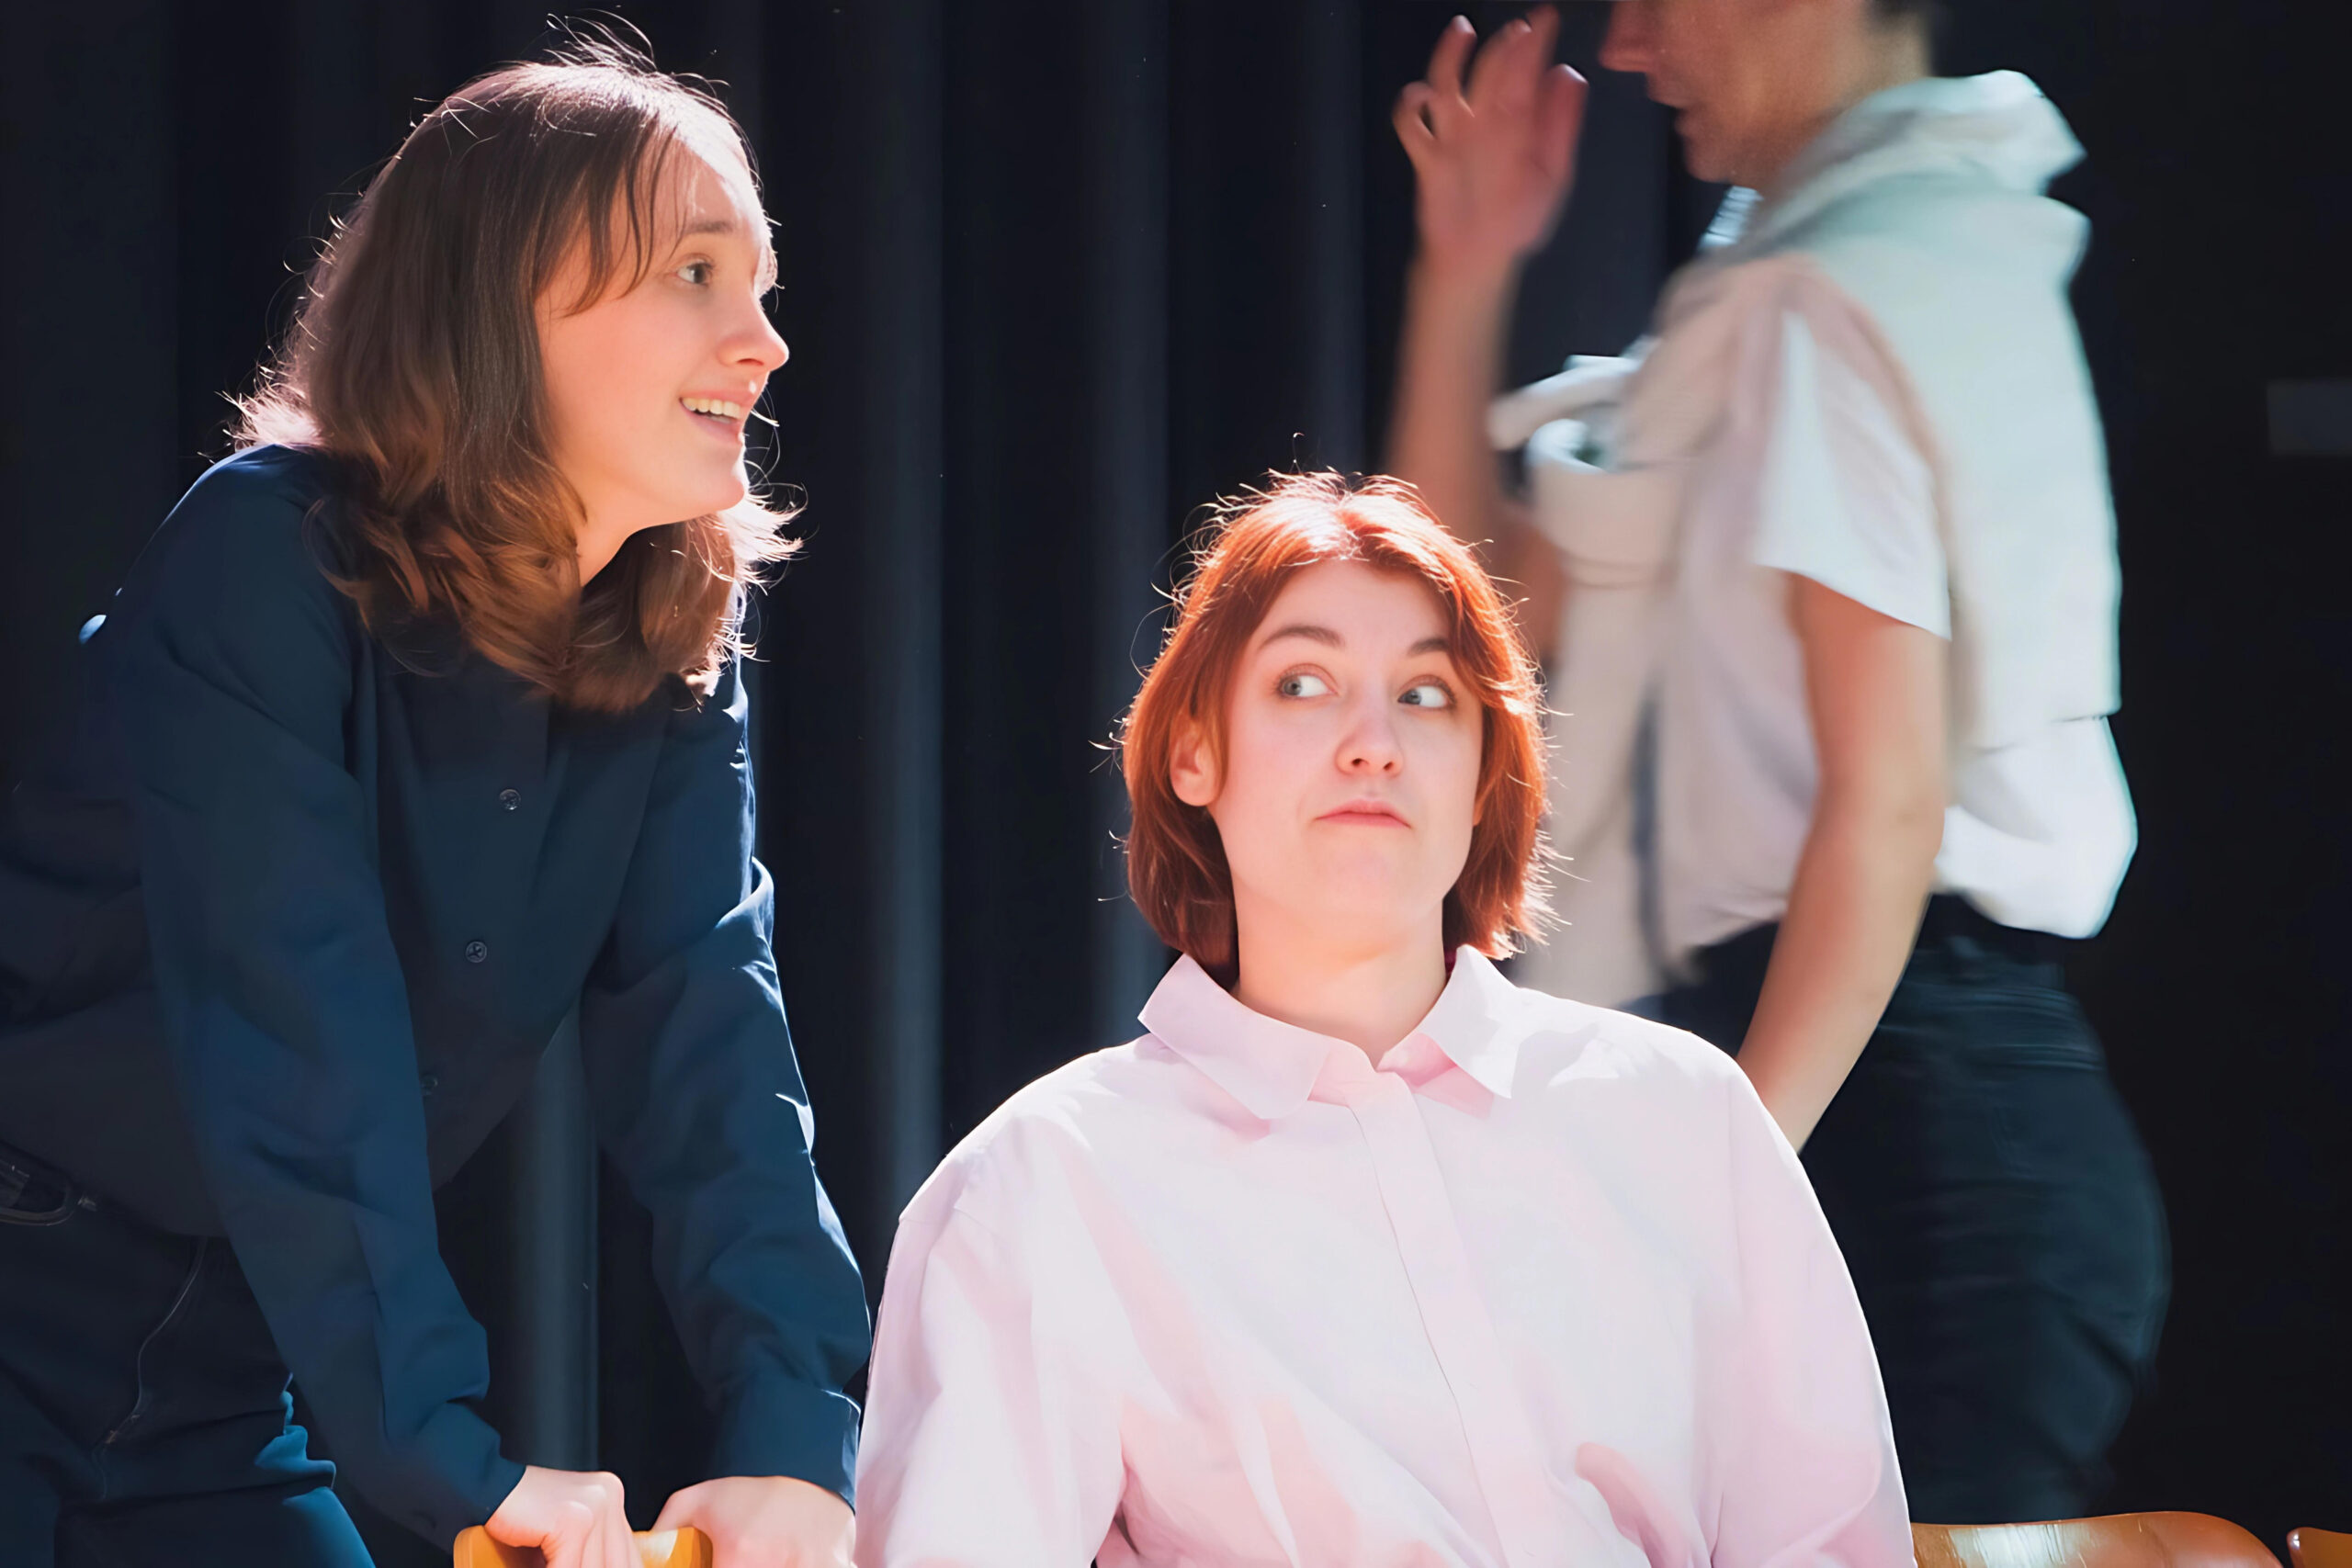 Die drei Hauptdarstellerinnen des Theaterstückes "Kunst" während der Probe. Die Schauspielerin links im Bild steht, die Schauspielerin in der Bildmitte sitzt und die Schauspielerin rechts im Bild geht im Hintergrund an ihnen vorbei.